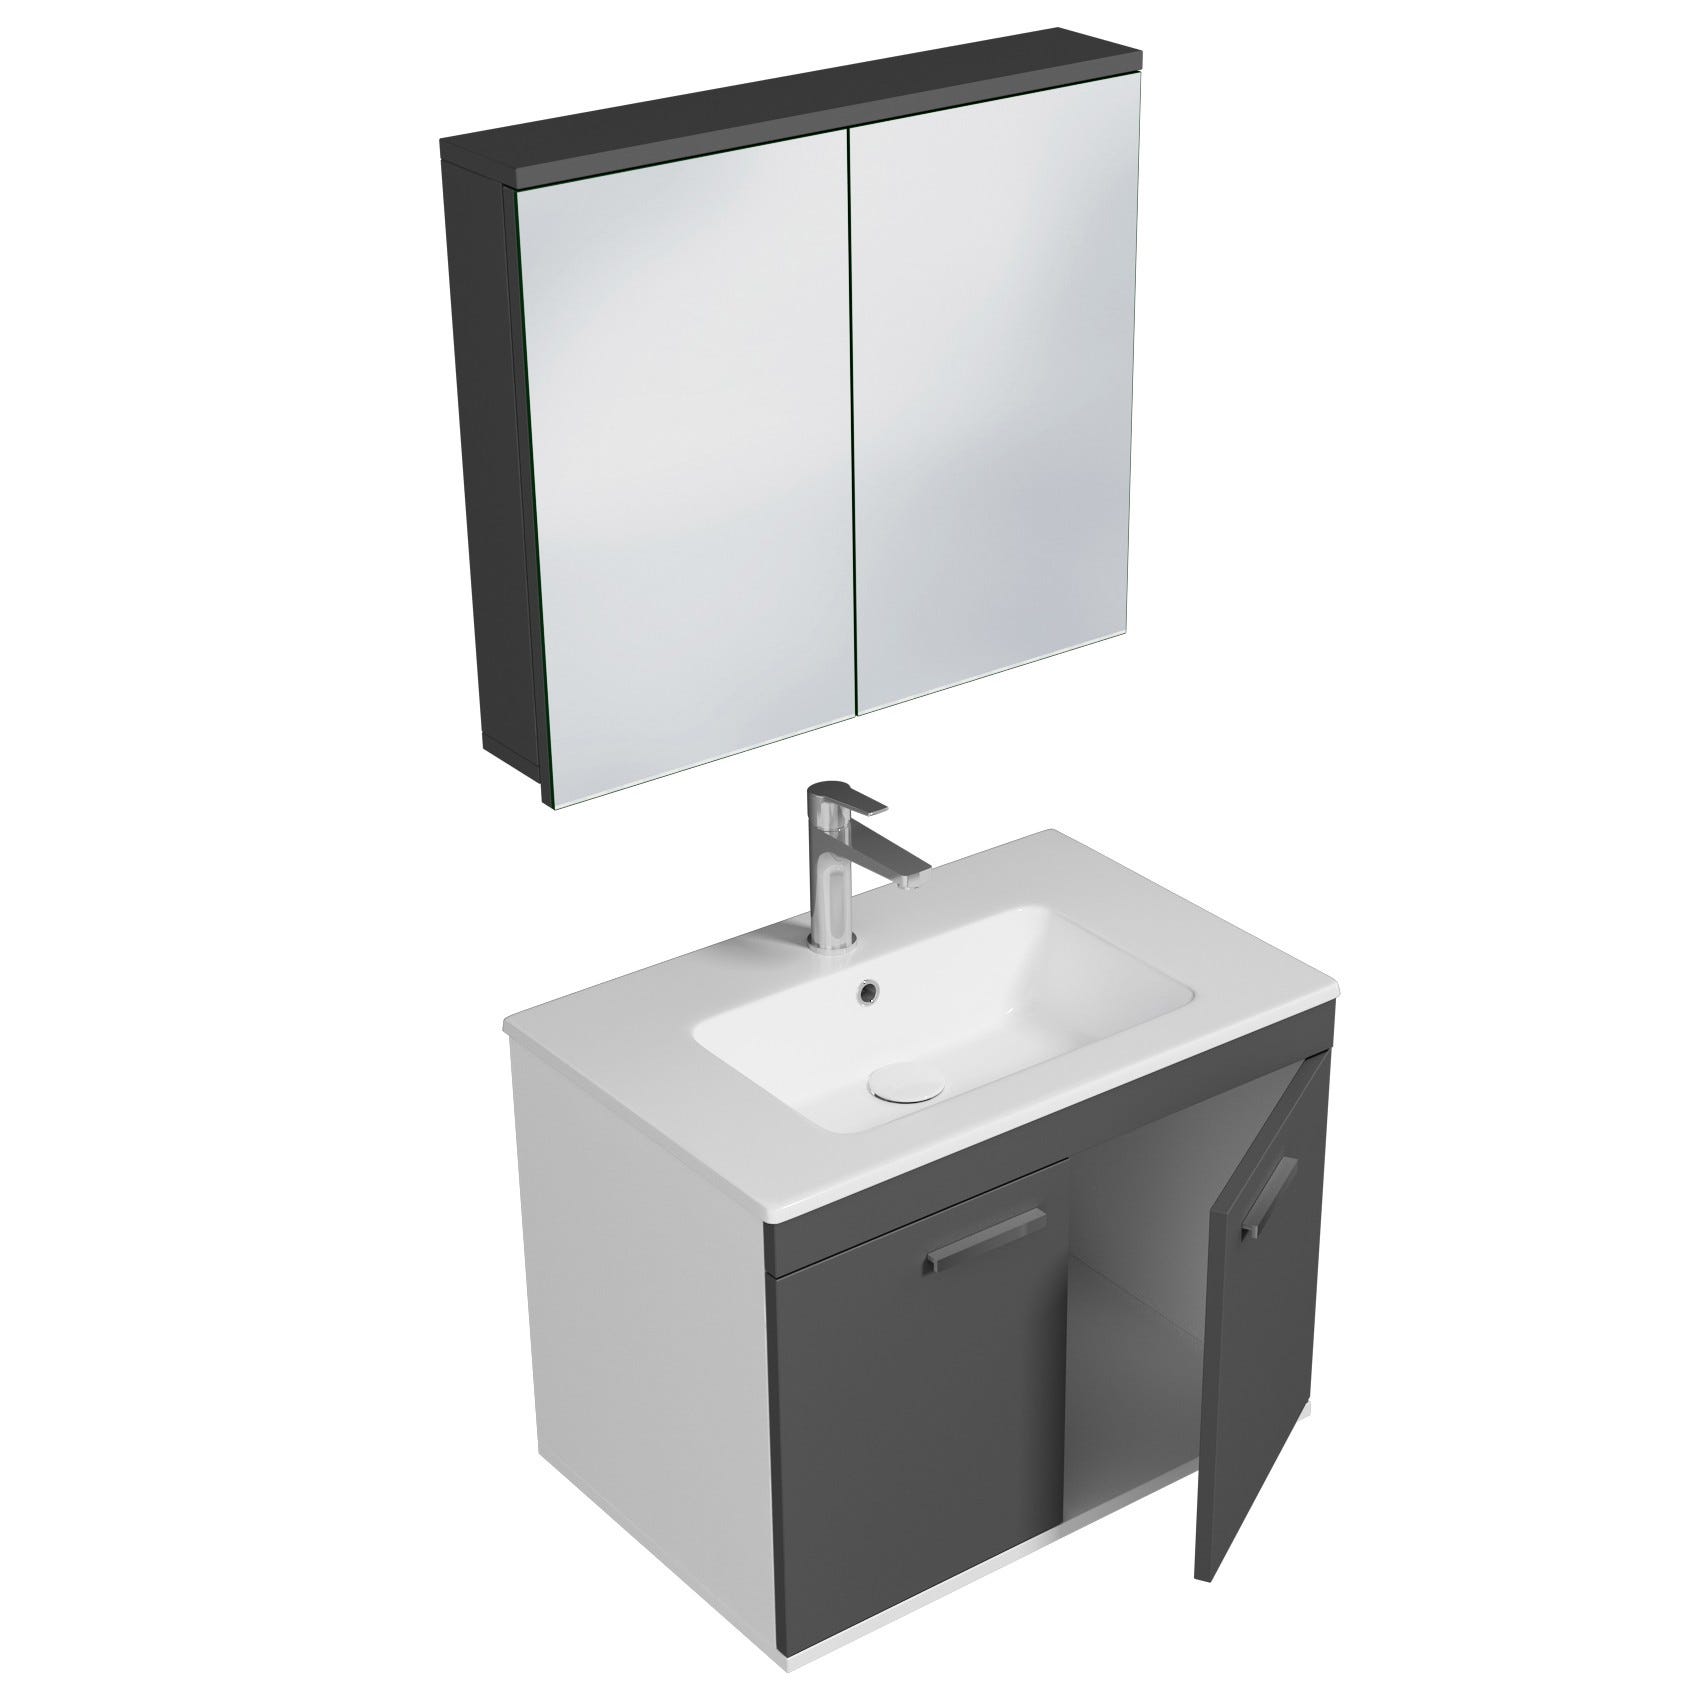 RUBITE Meuble salle de bain simple vasque 2 portes gris anthracite largeur 70 cm + miroir armoire 1